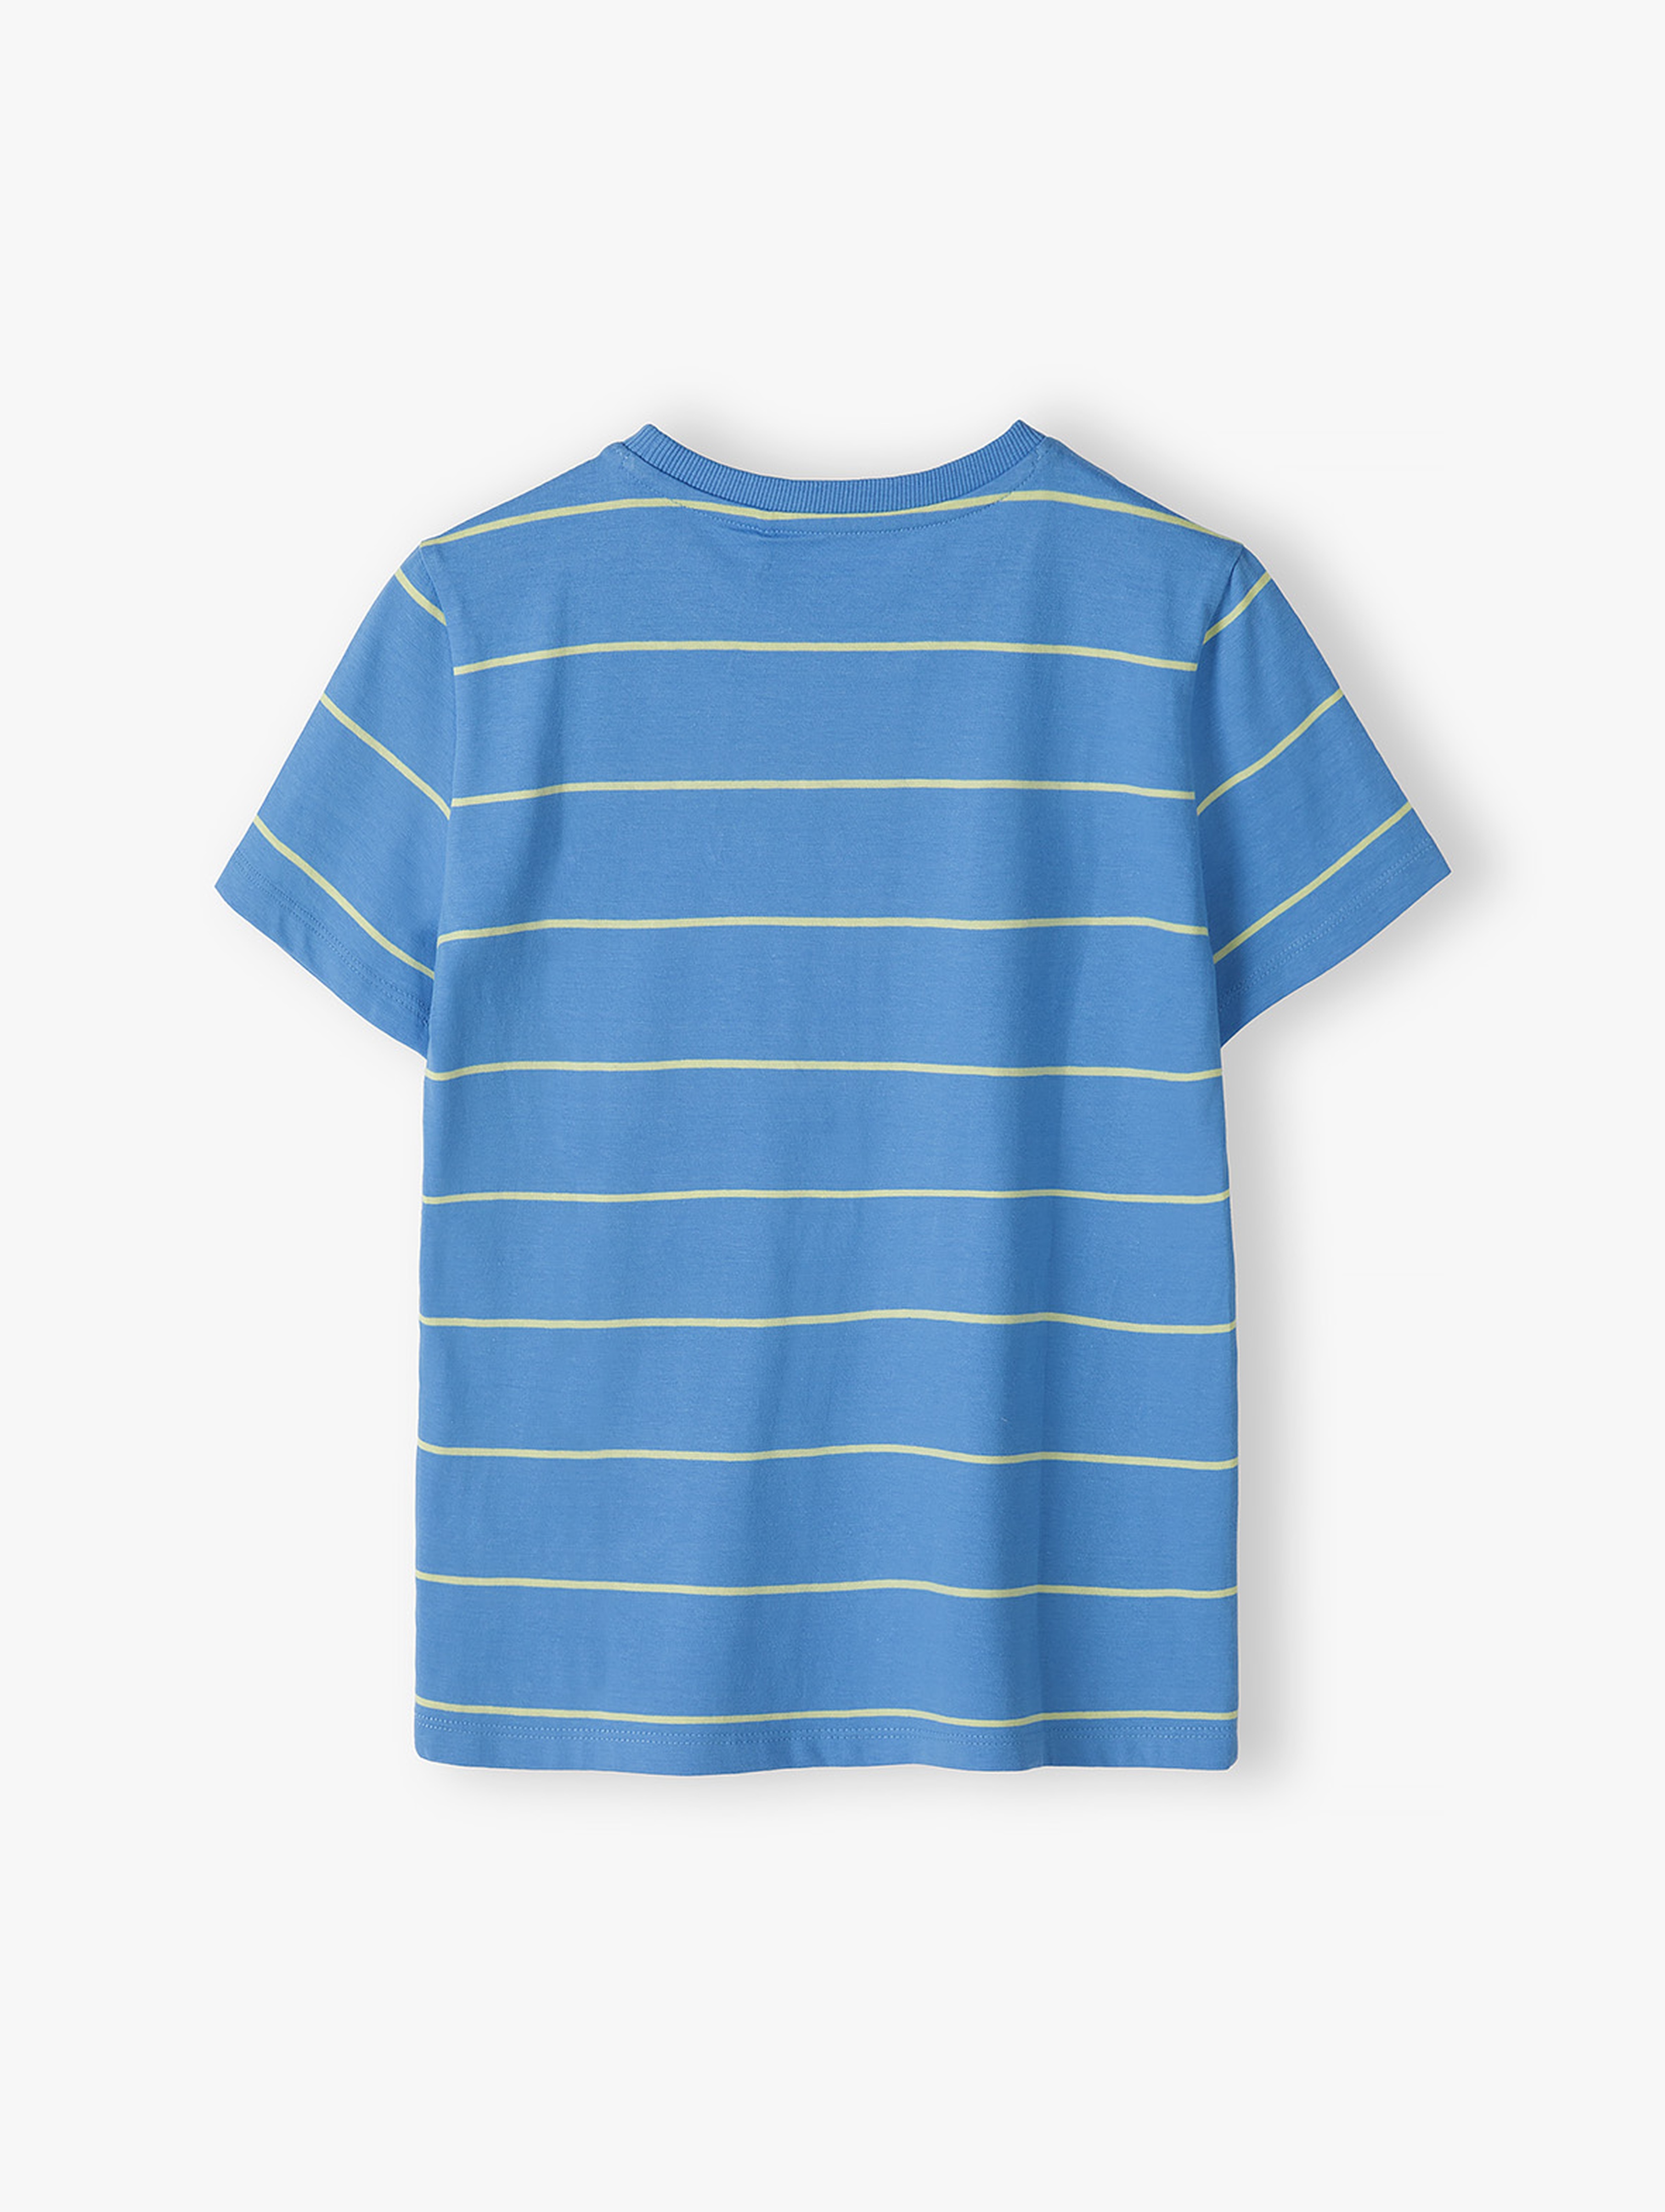 Niebieski t-shirt chłopięcy w paski - Limited Edition